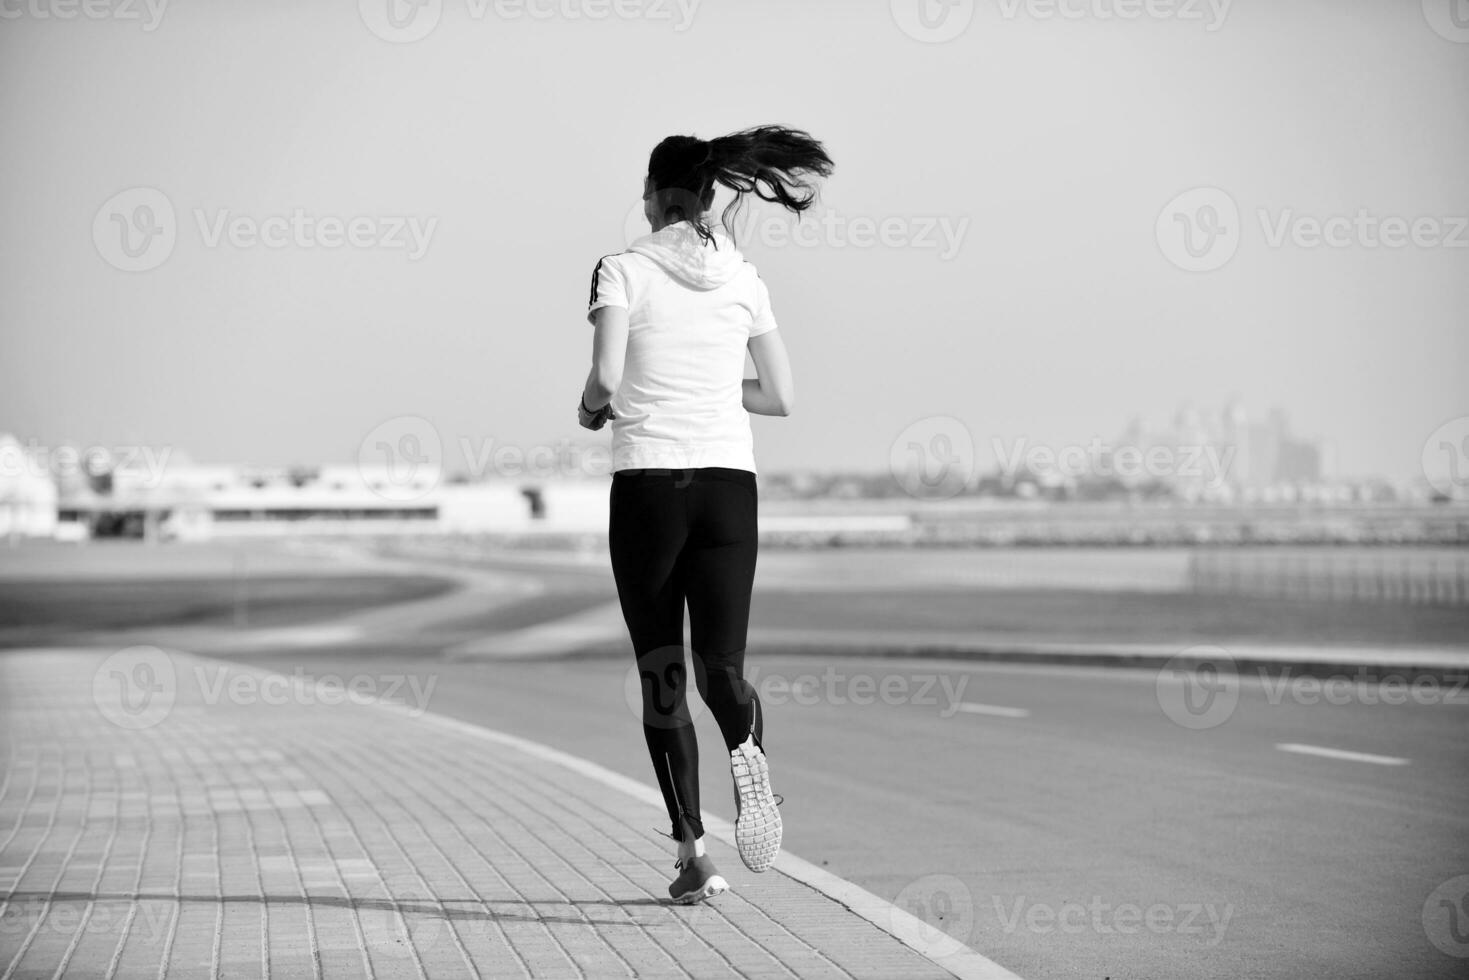 Frau, die am Morgen joggt foto